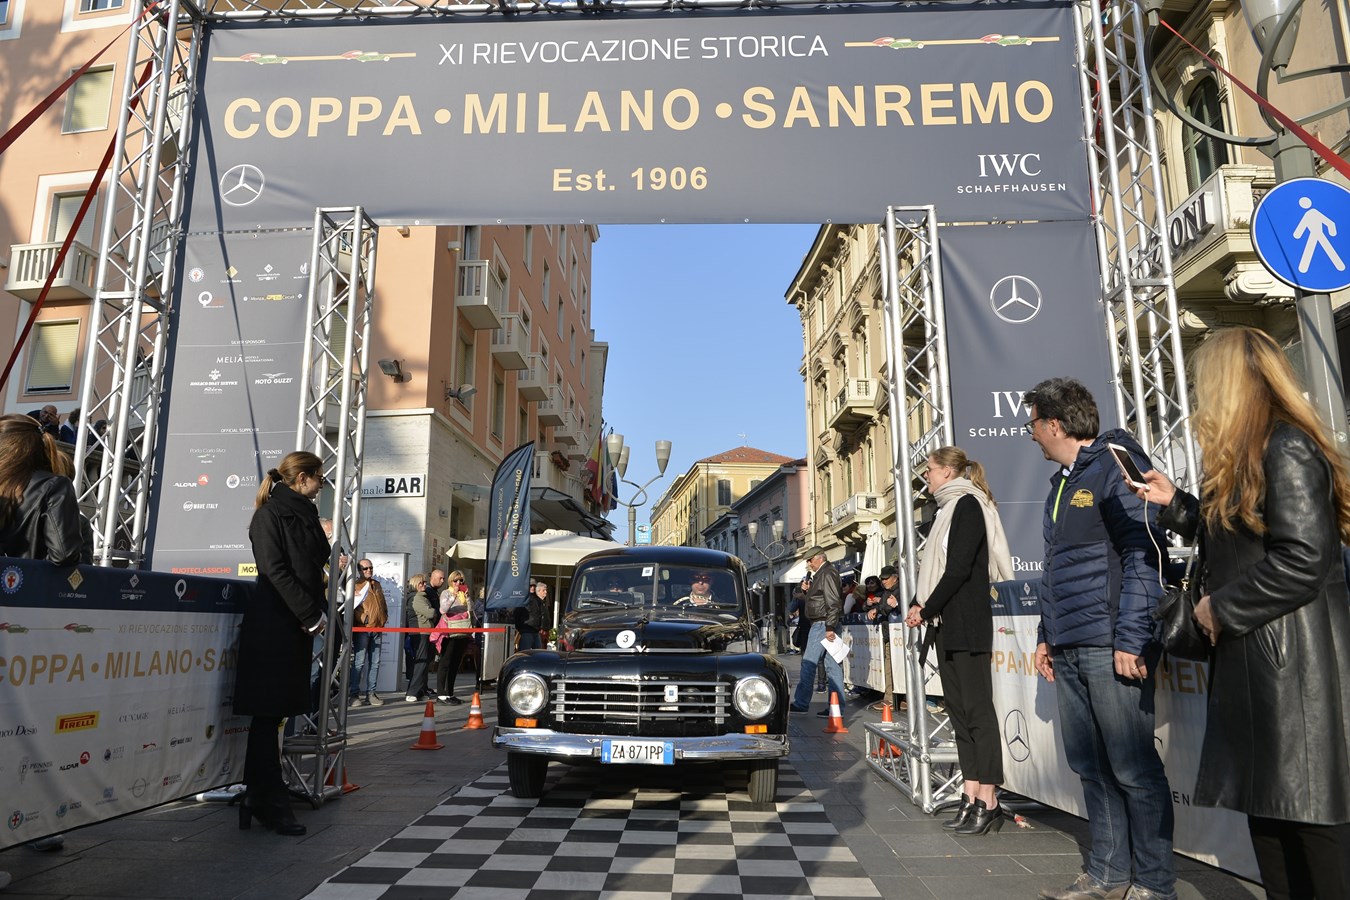 Coppa Milano - San Remo 2019